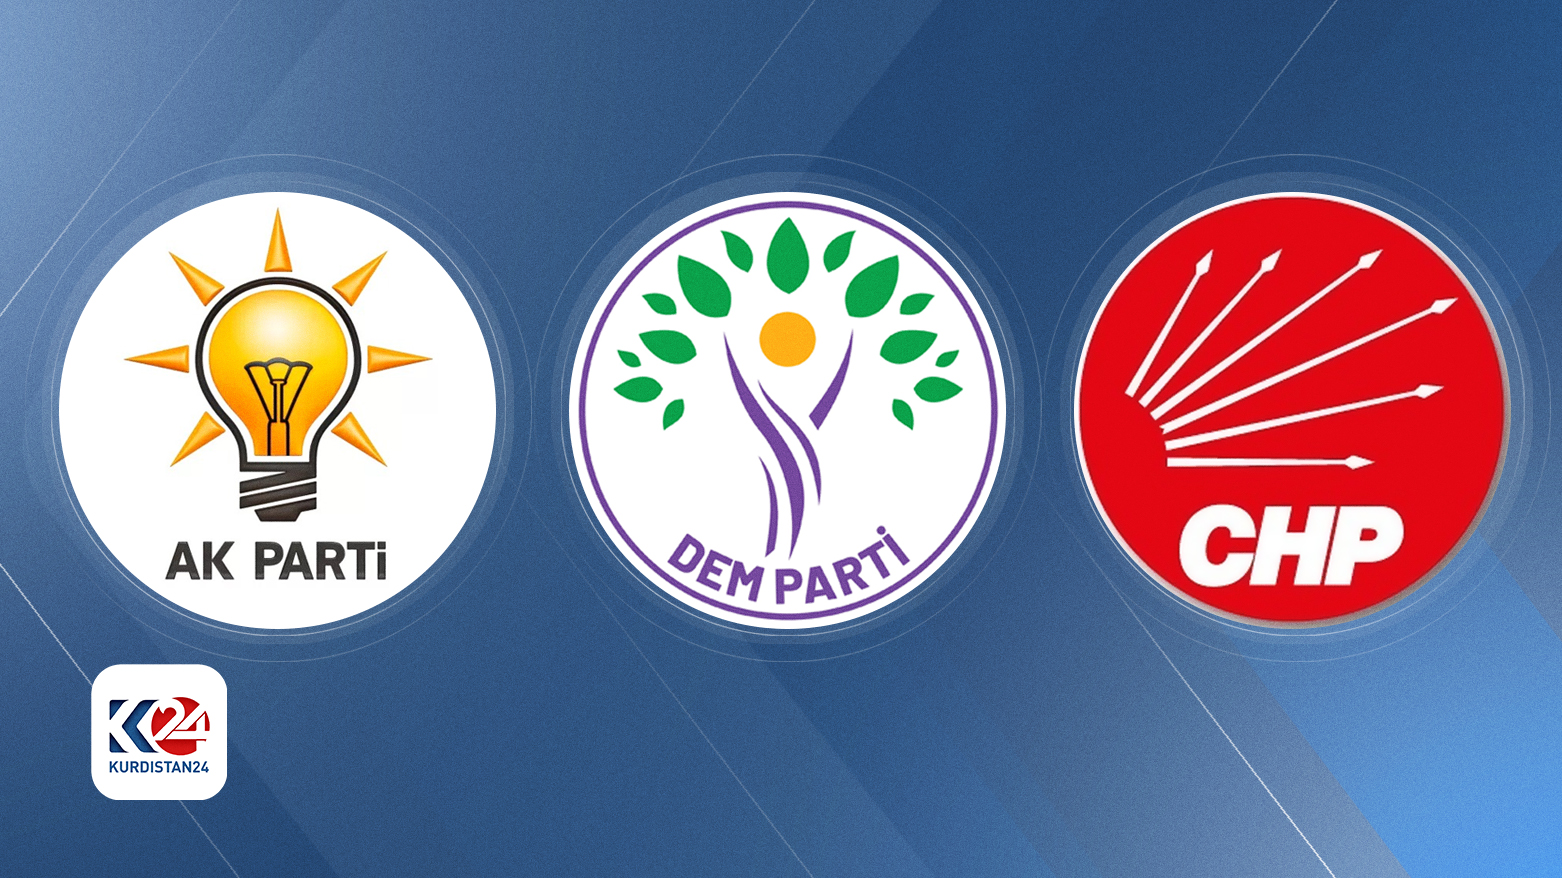 AK Parti, DEM Parti ve CHP logoları-Kurdistan24